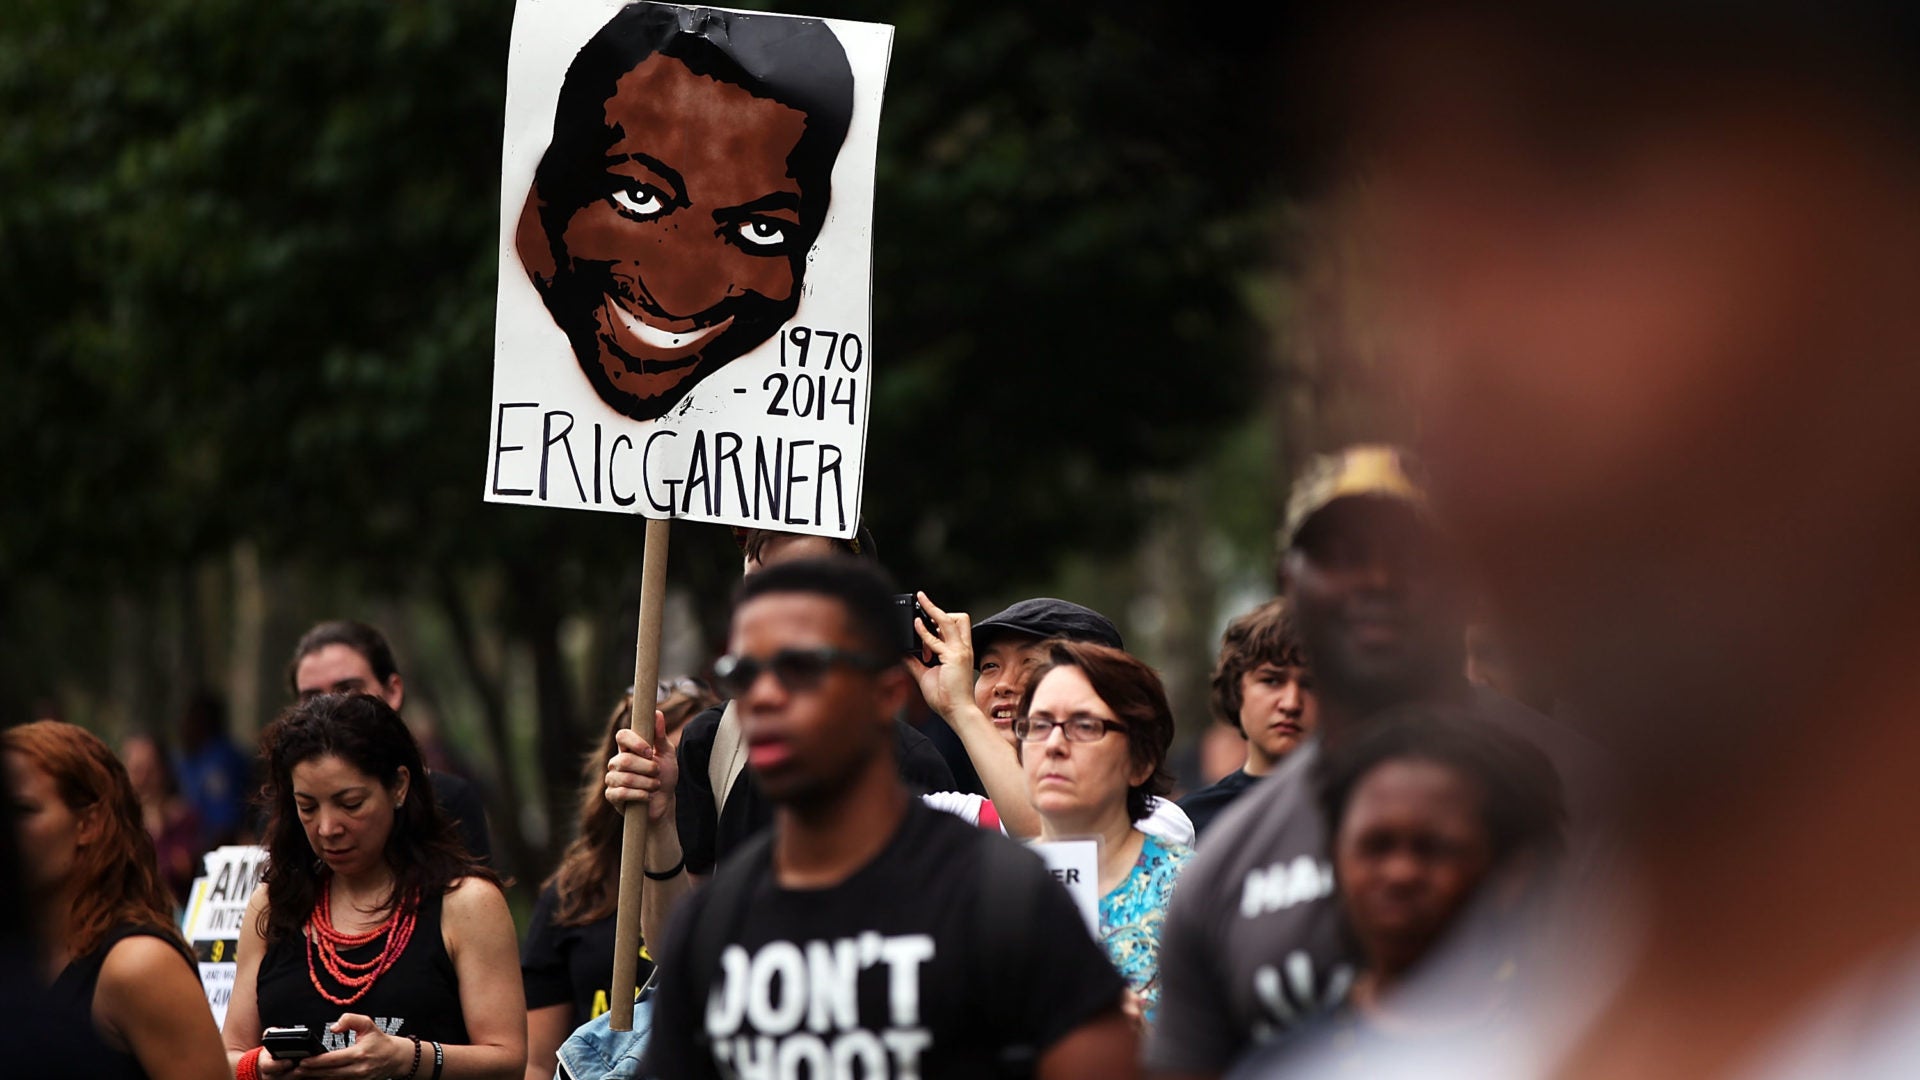 National Black Police Association Calls For Firing Of Officer In Eric Garner's Death